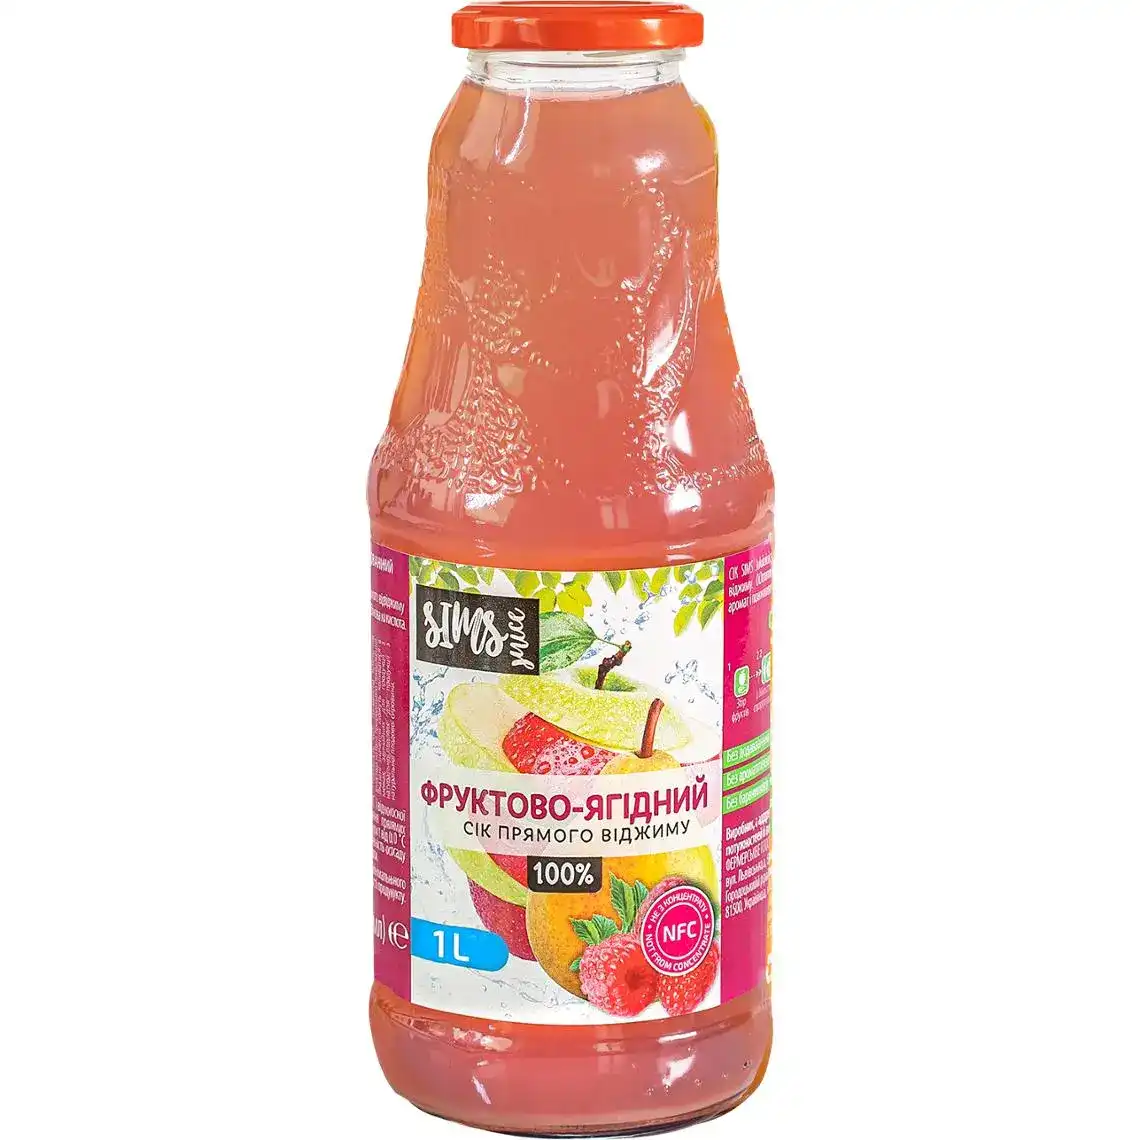 Сік Sims Juice фруктово-ягідний 1 л